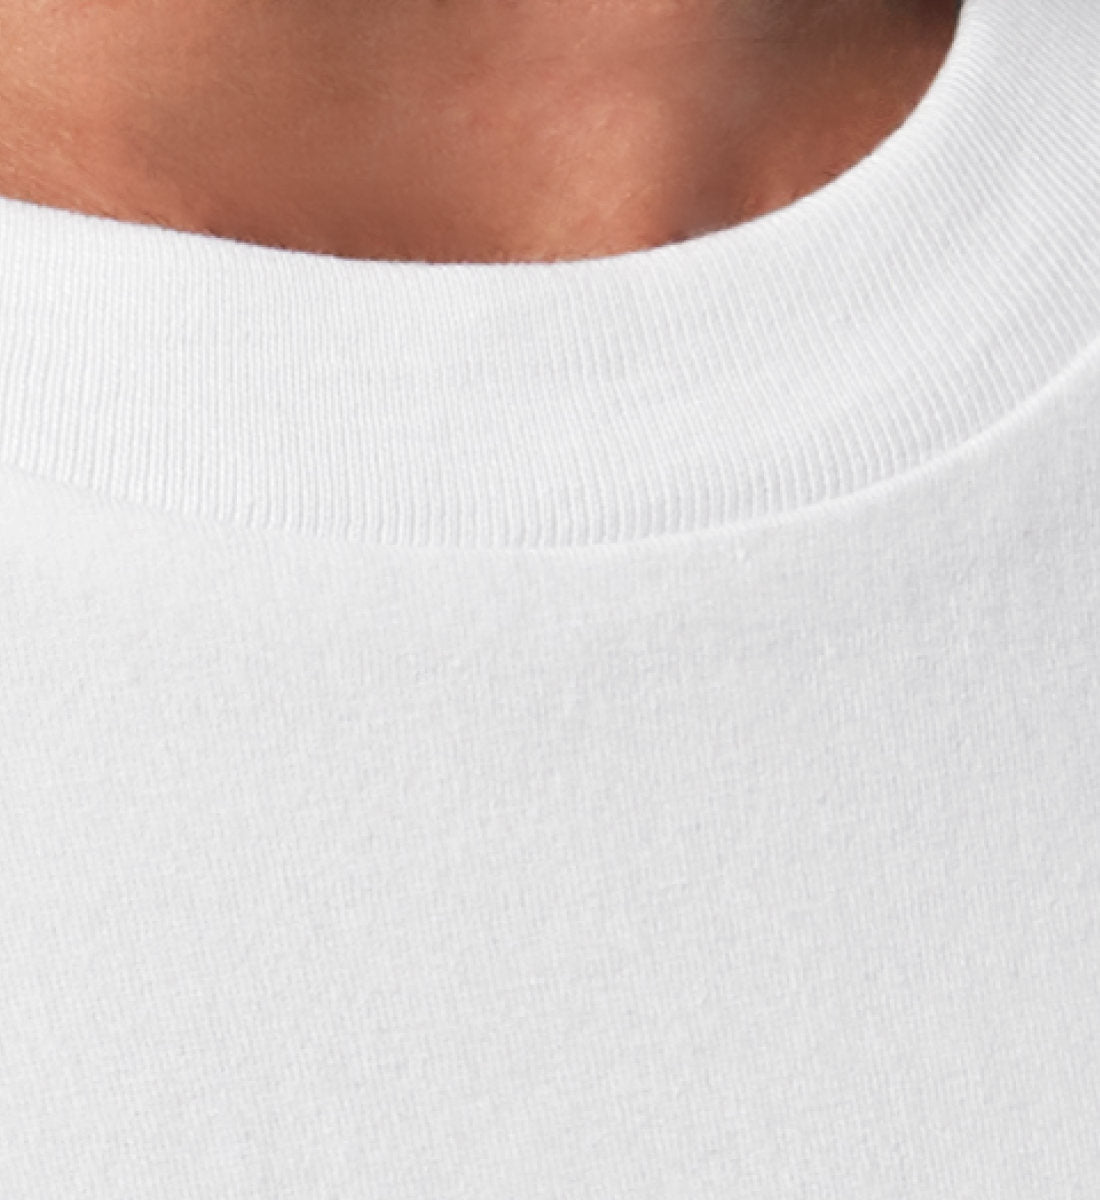 Weißes T-Shirt Unisex Relaxed Fit für Damen und Herren bedruckt mit dem Design der Roger Rockawoo Kollektion Jesus i saw that